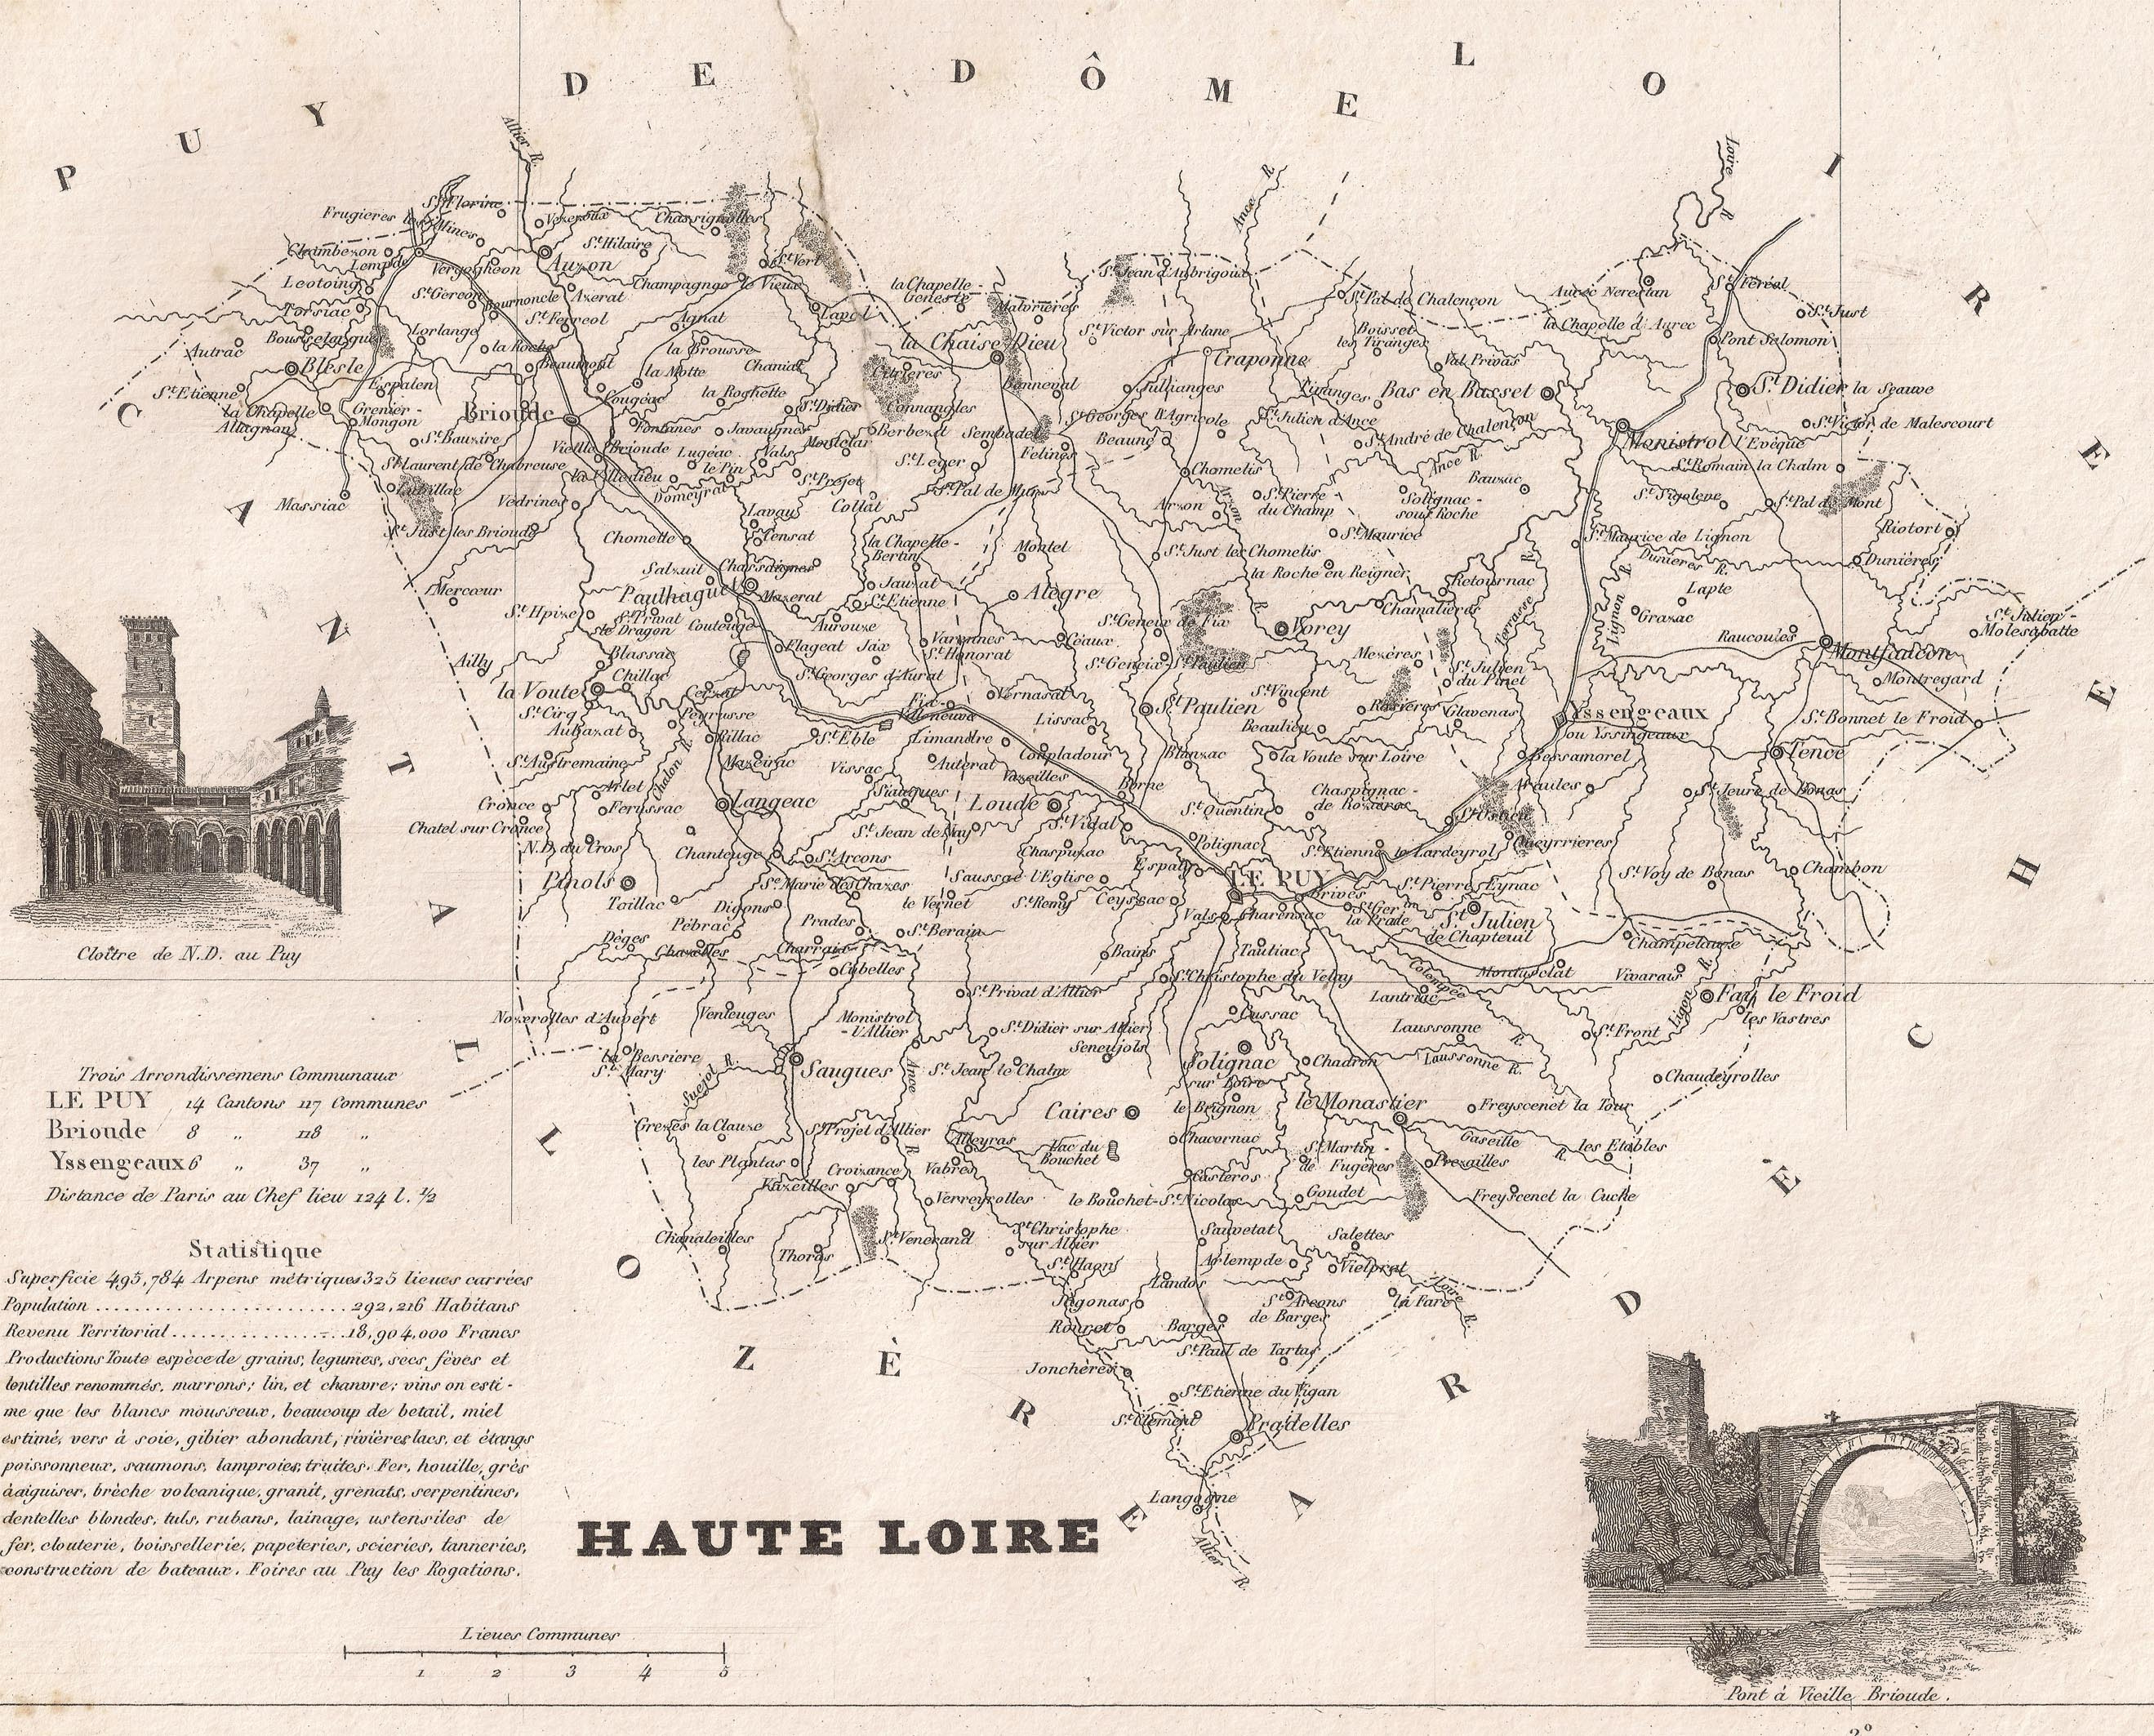 43 - Haute Loire